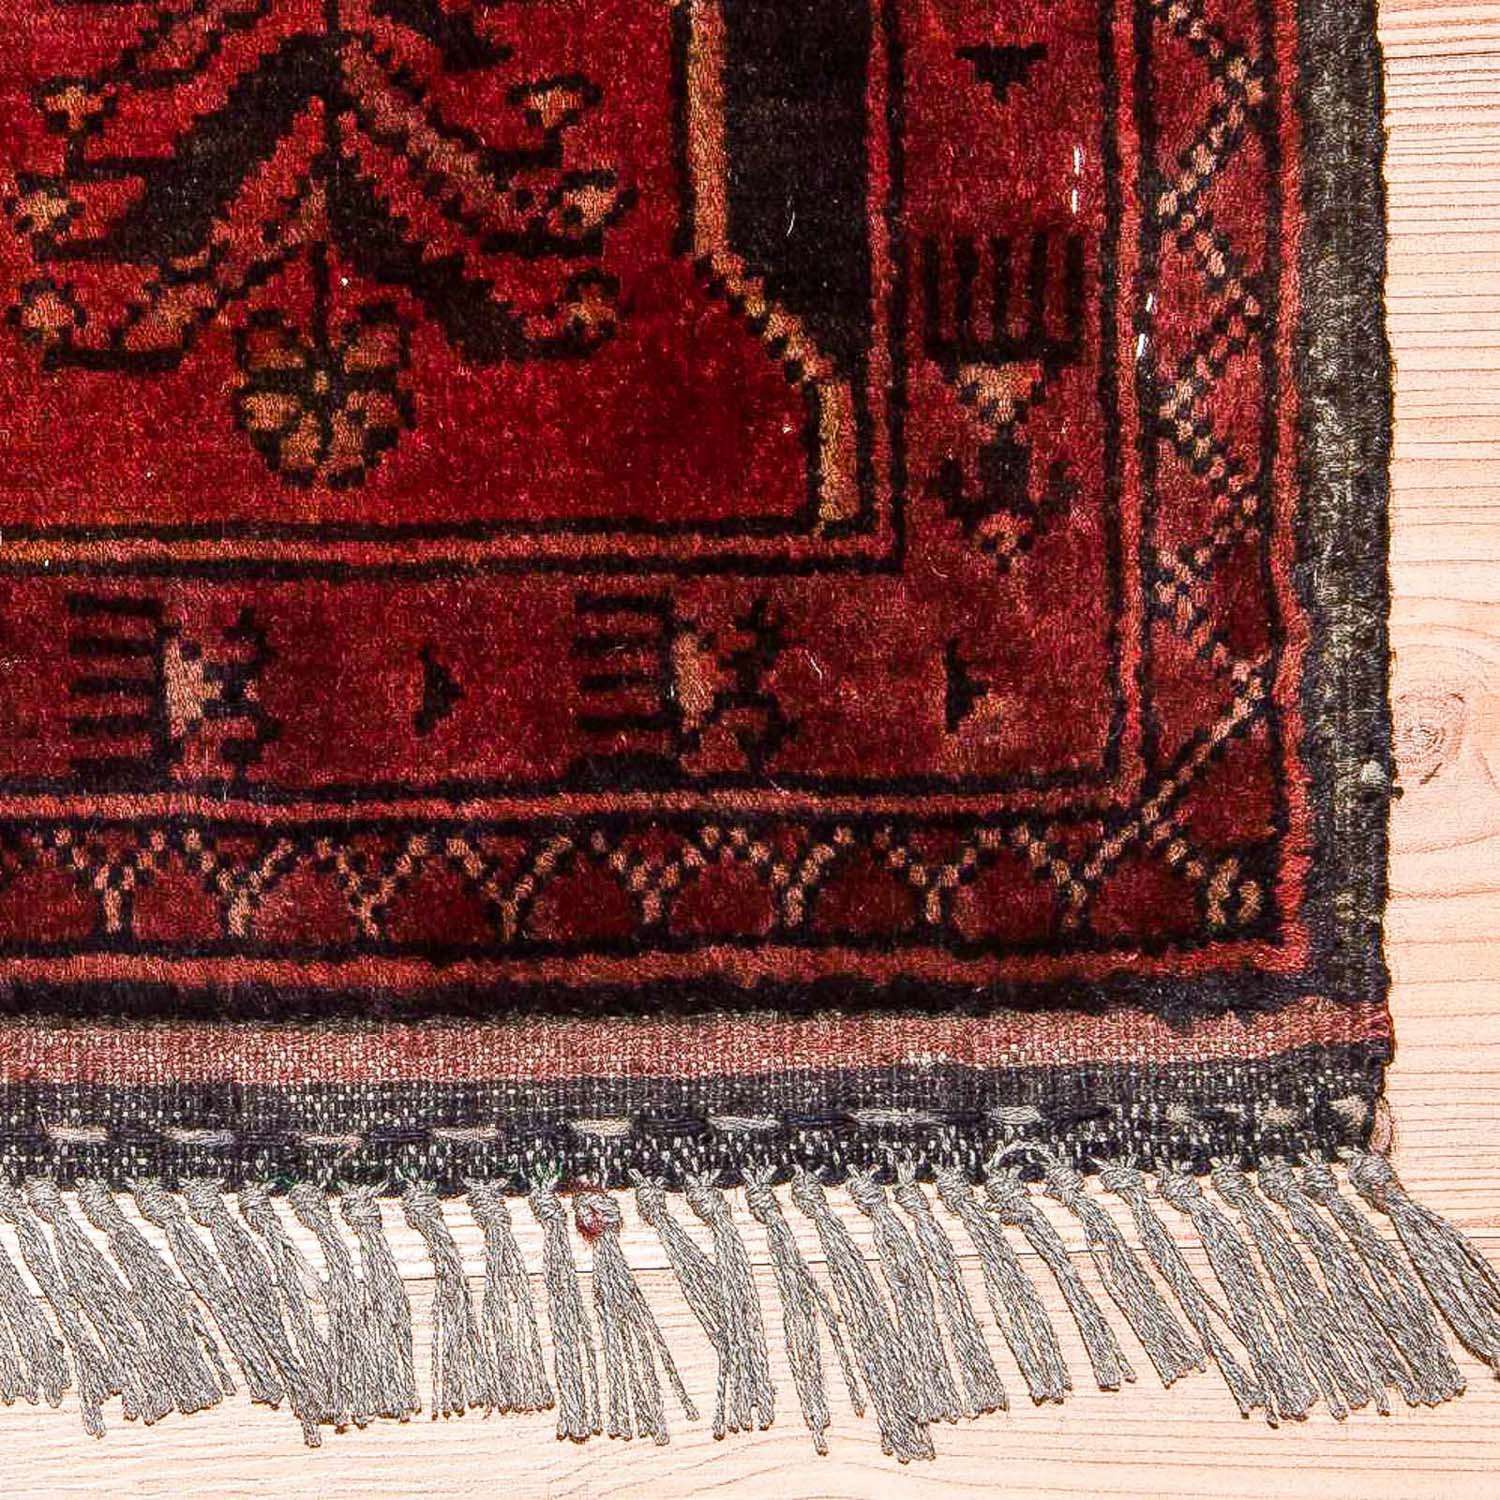 Afghansk tæppe - Kunduz - 138 x 96 cm - rød